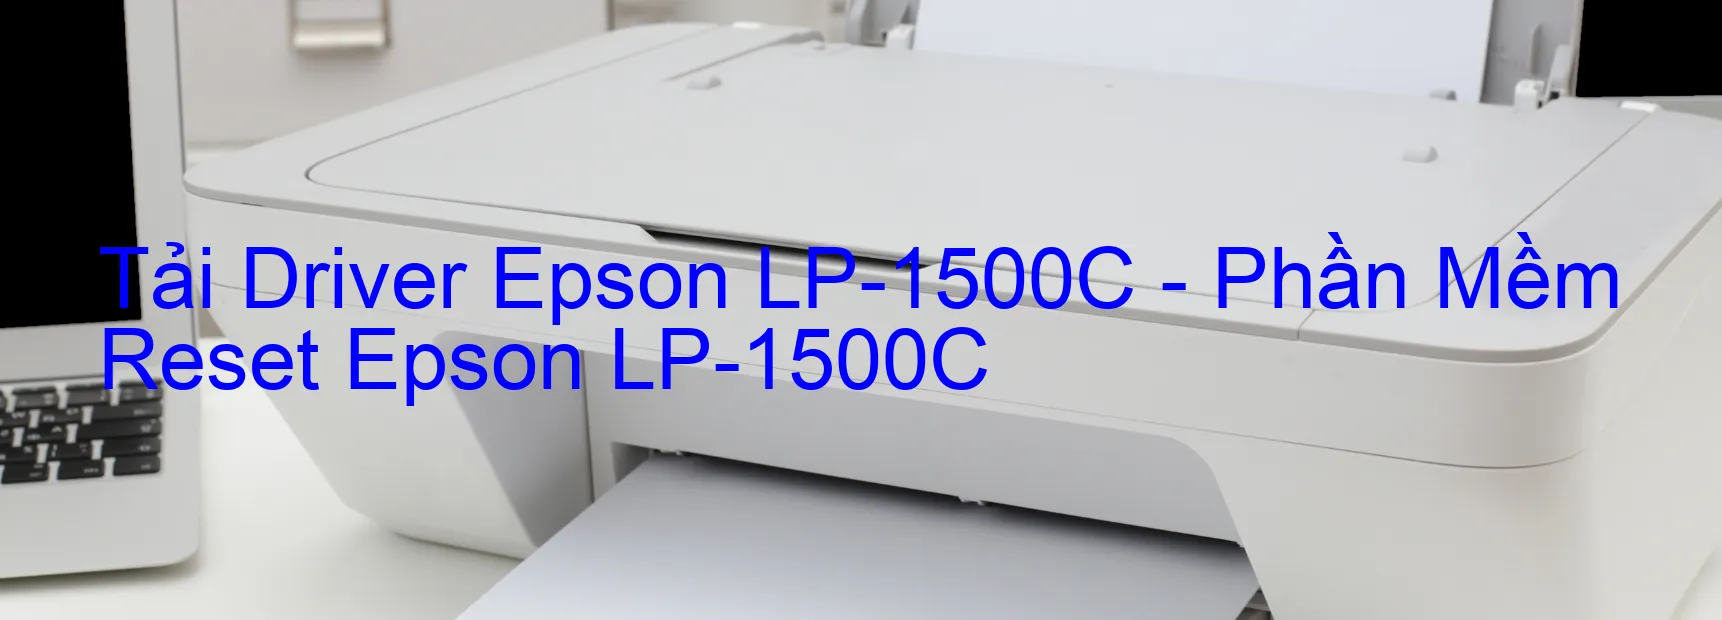 Driver Epson LP-1500C, Phần Mềm Reset Epson LP-1500C